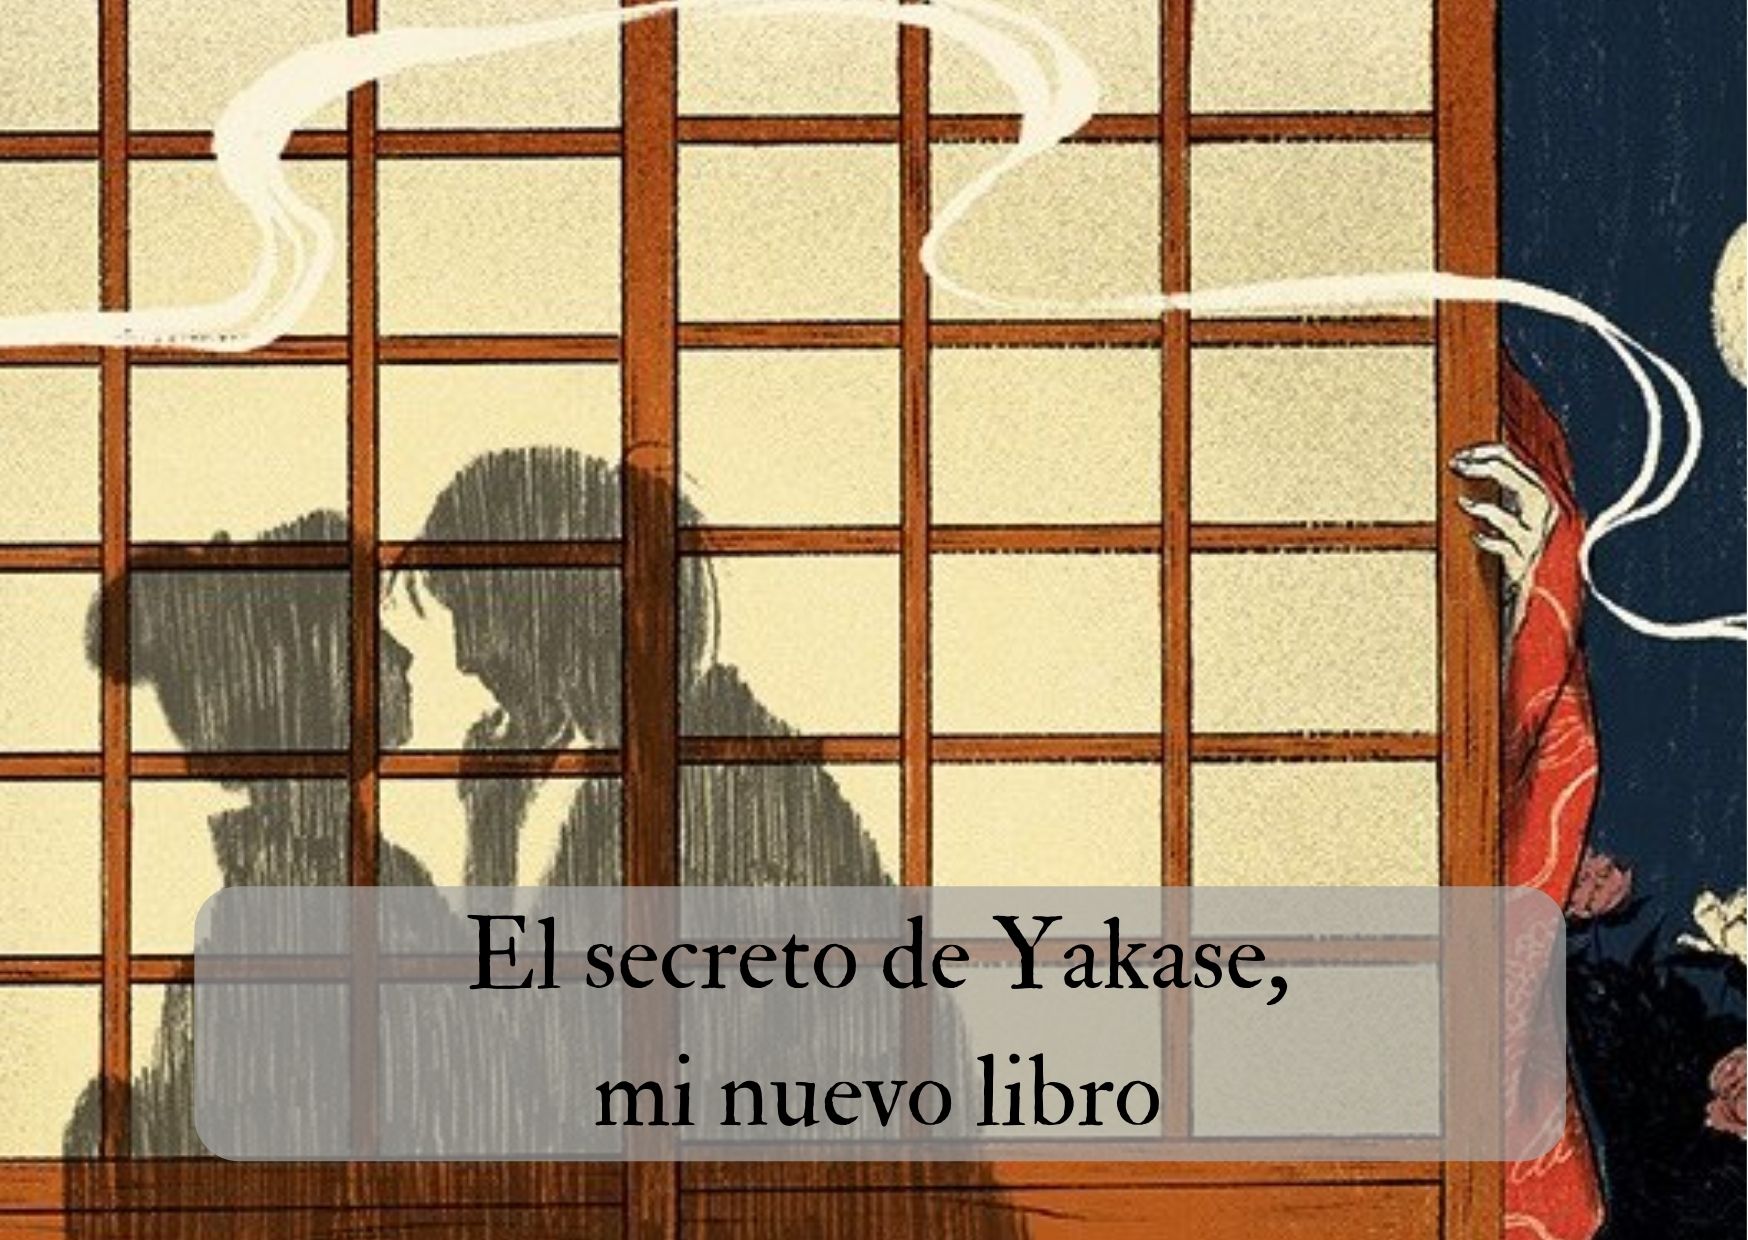 El secreto de Yakase, mi nuevo libro